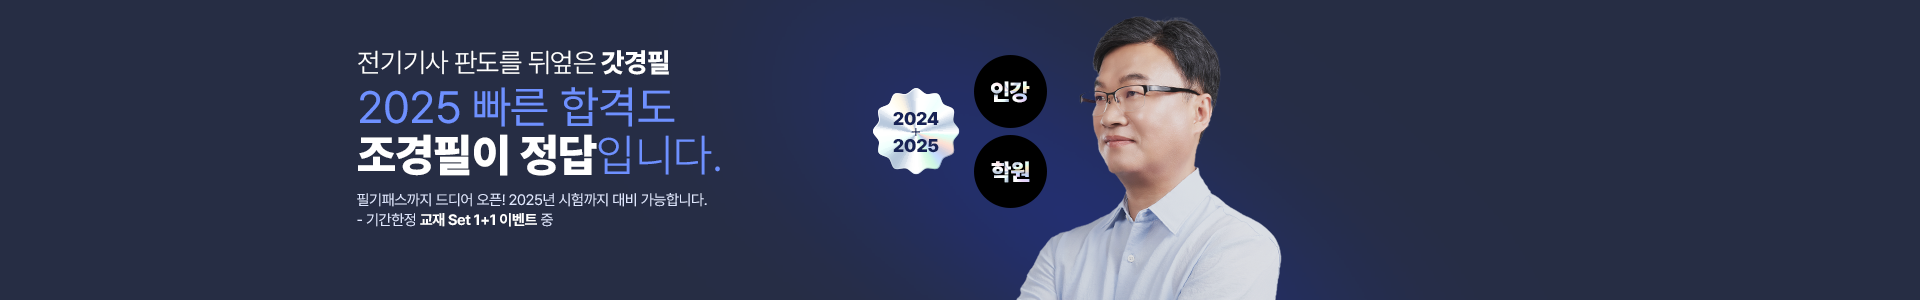 [인강]2024 단기라인업